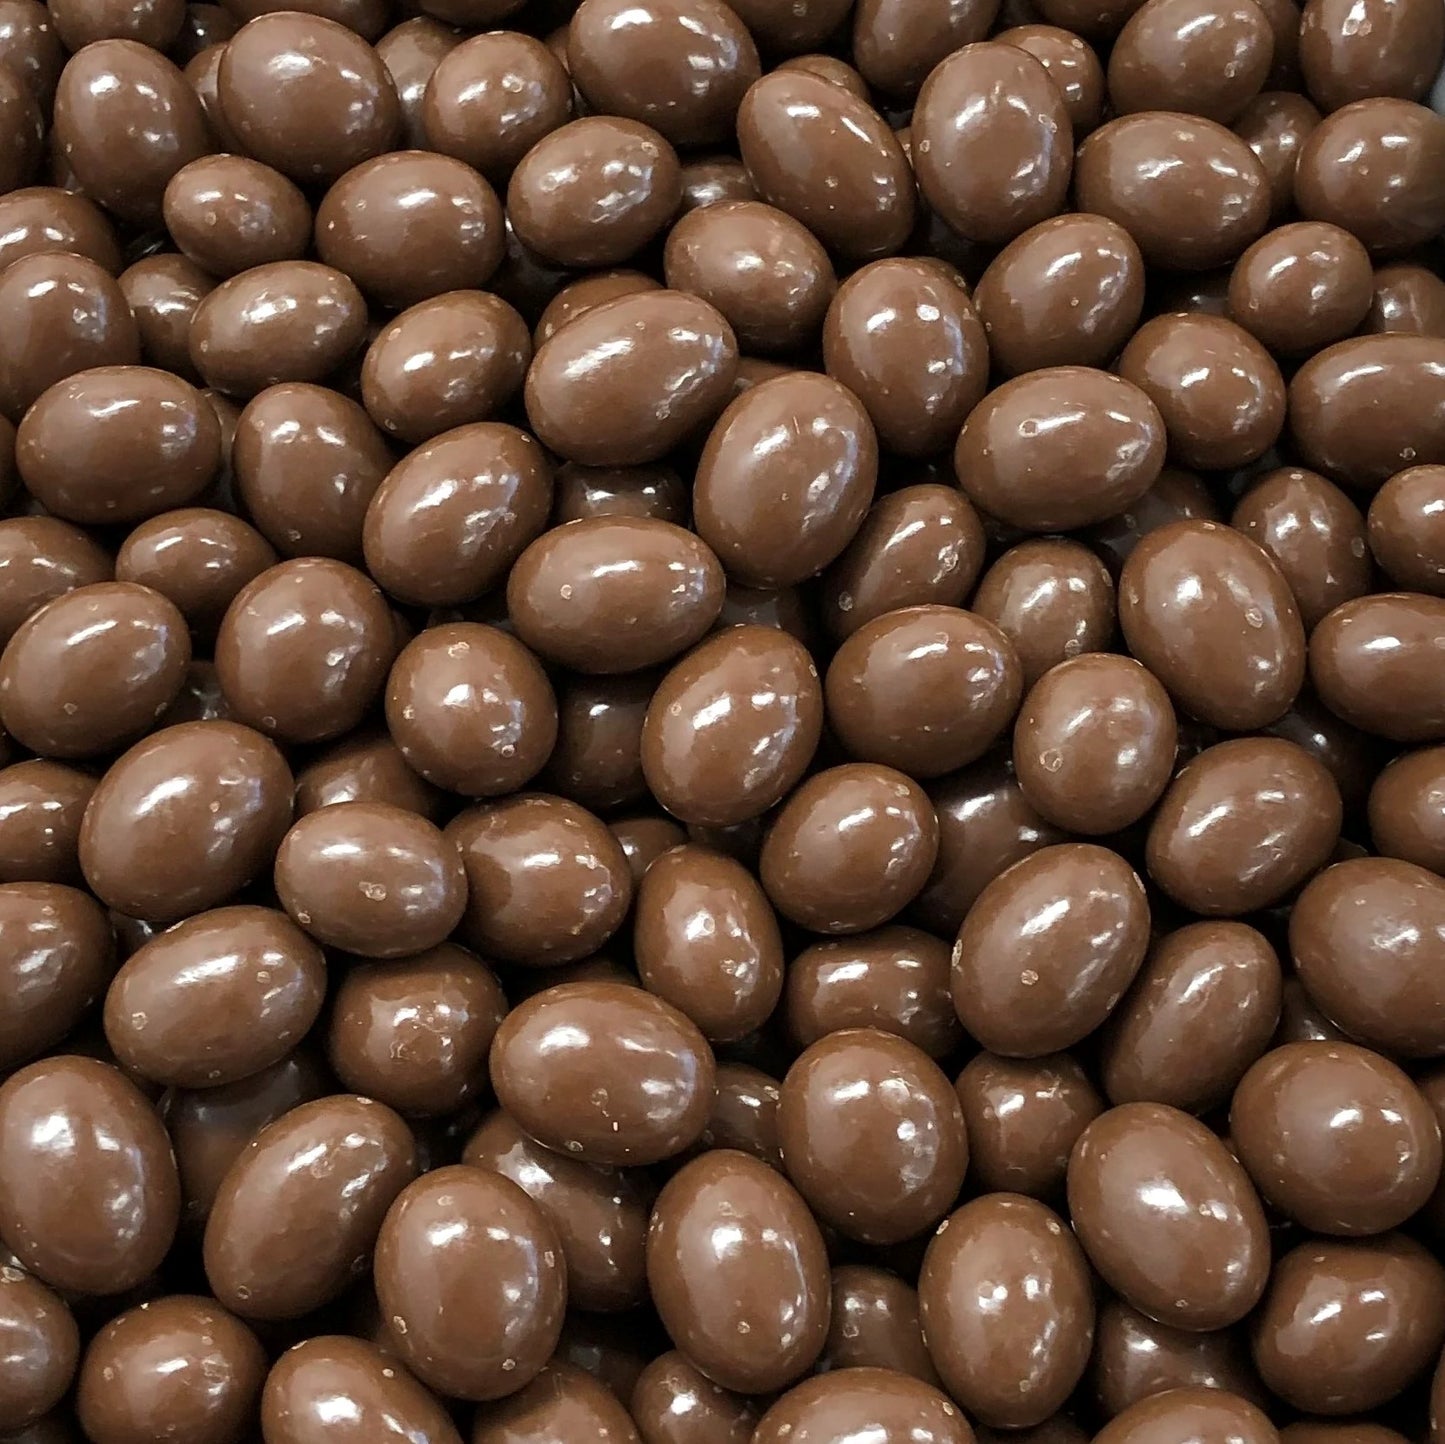 Chocolate Almonds - 300g Bag